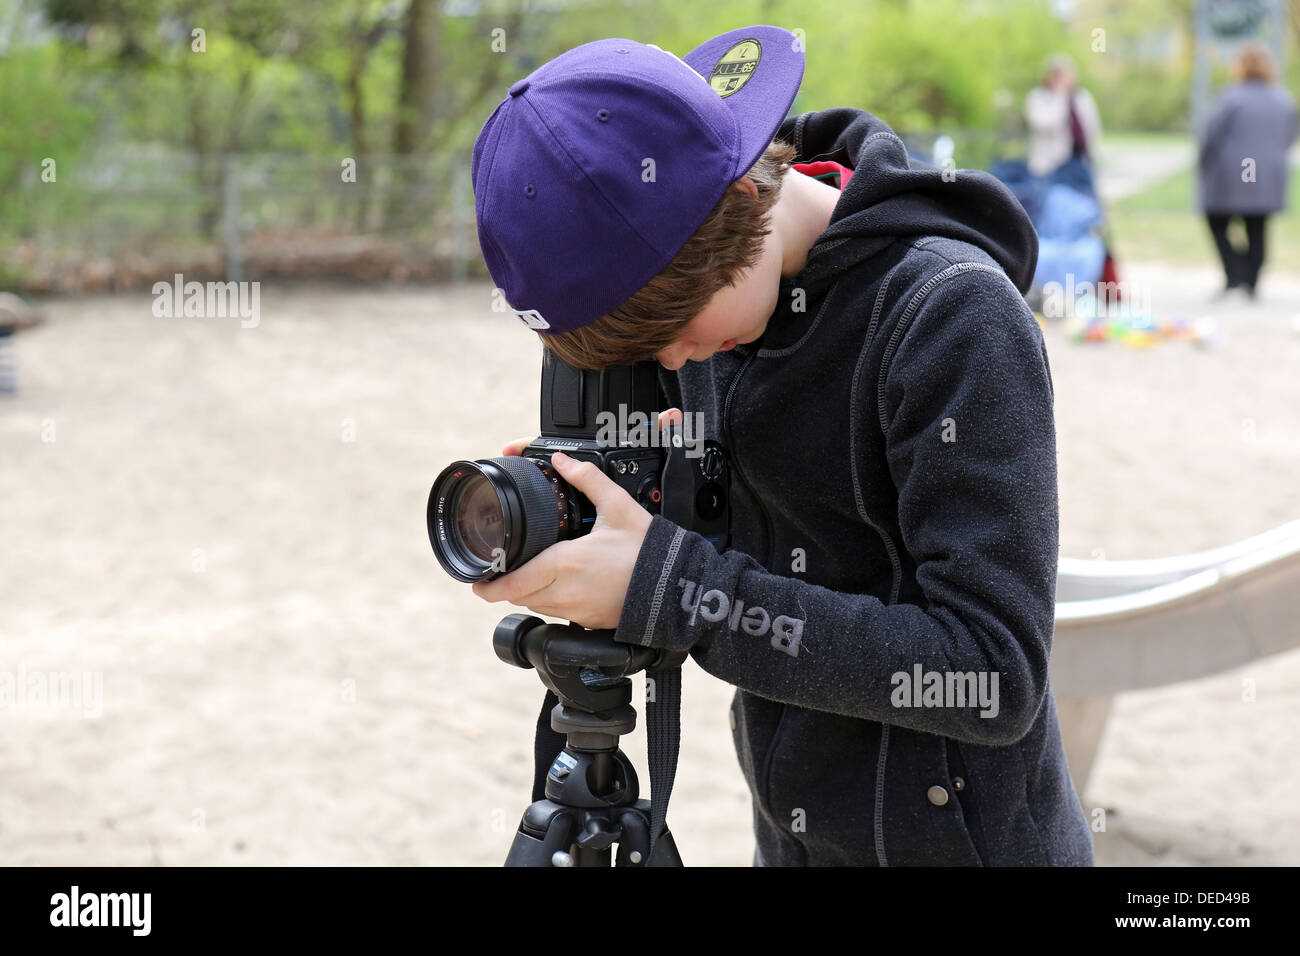 Berlin, Allemagne, garçon photographié avec un appareil moyen format Hasselblad Banque D'Images